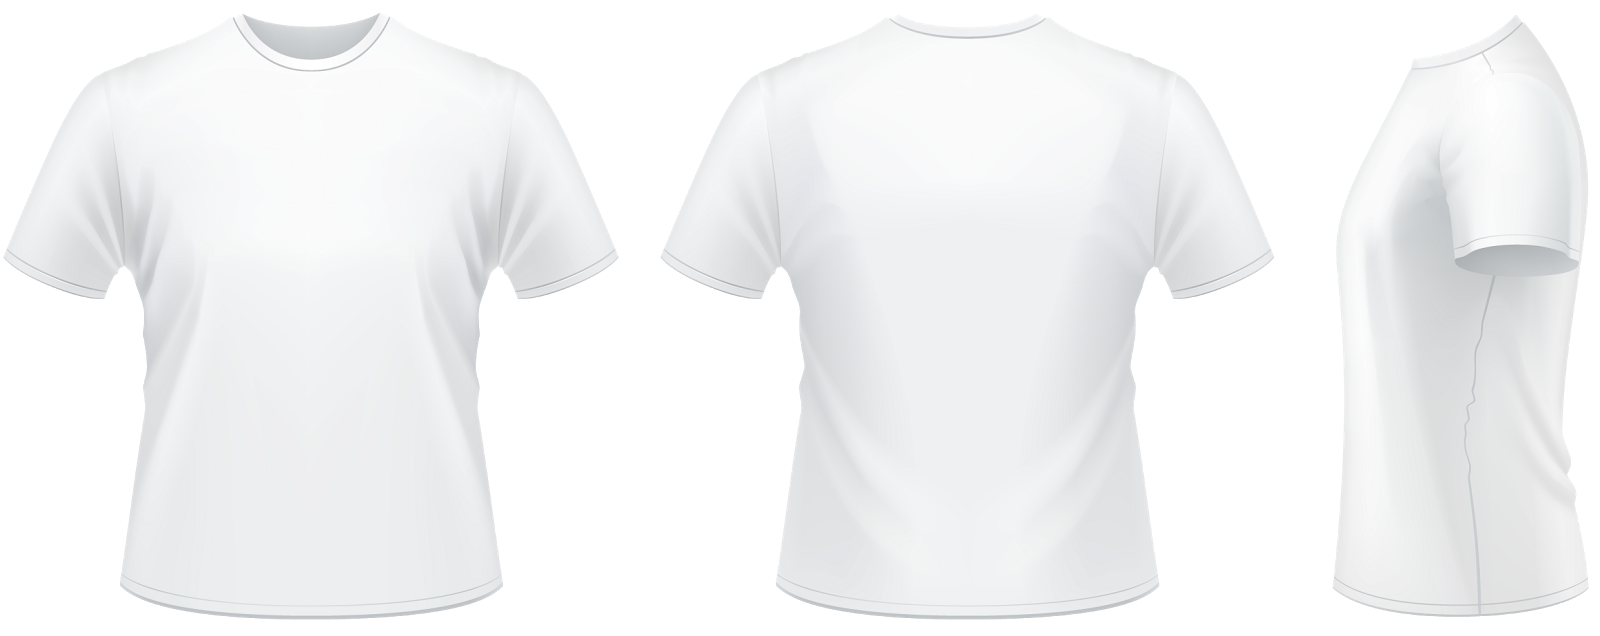 Camiseta Para Personalizar Png | Free PNG Image